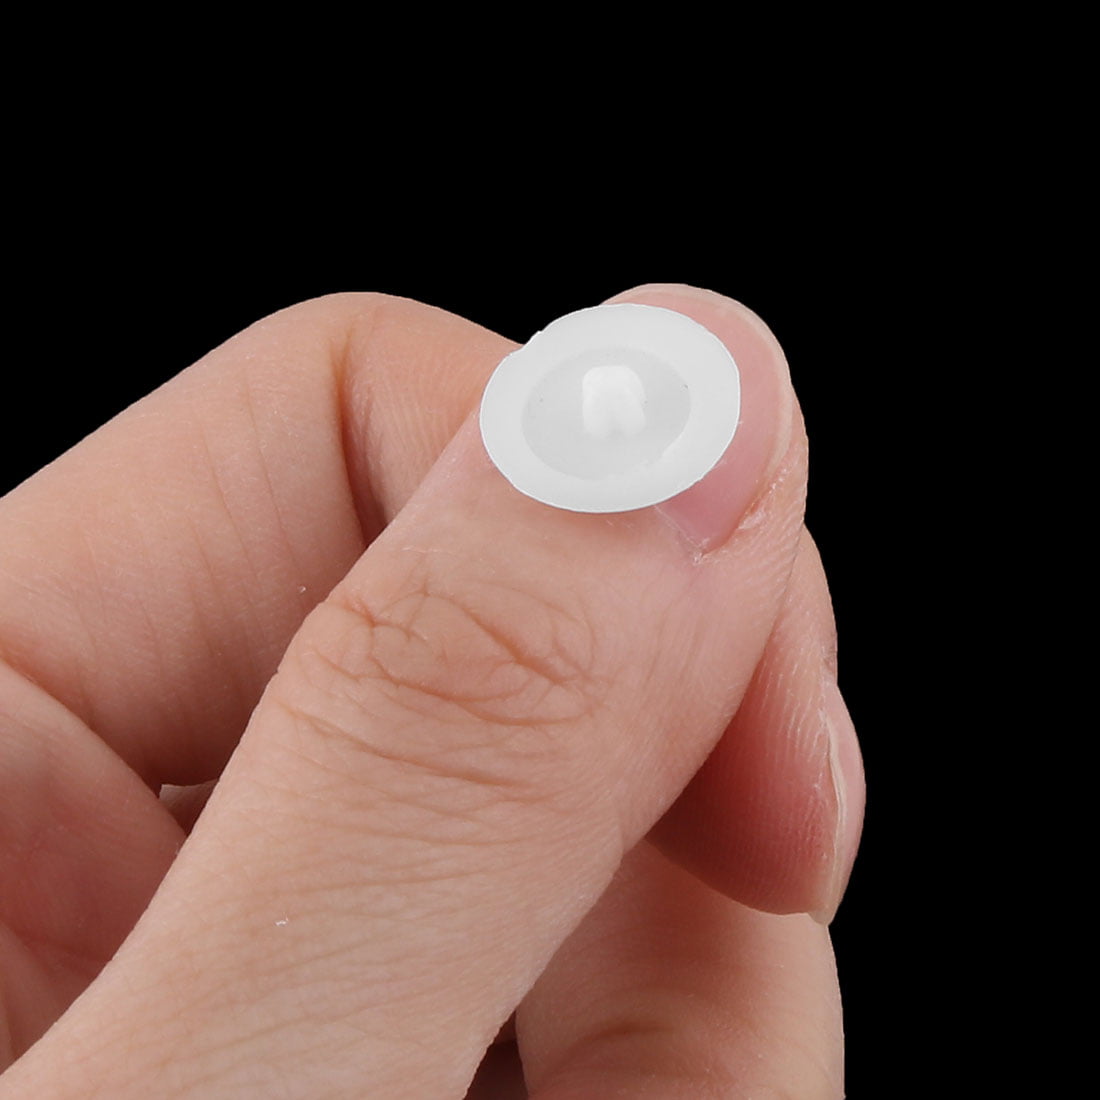 Plastic Round Shaped Phillips Screw Cap Cover White 12mm Diameter 80pcs 